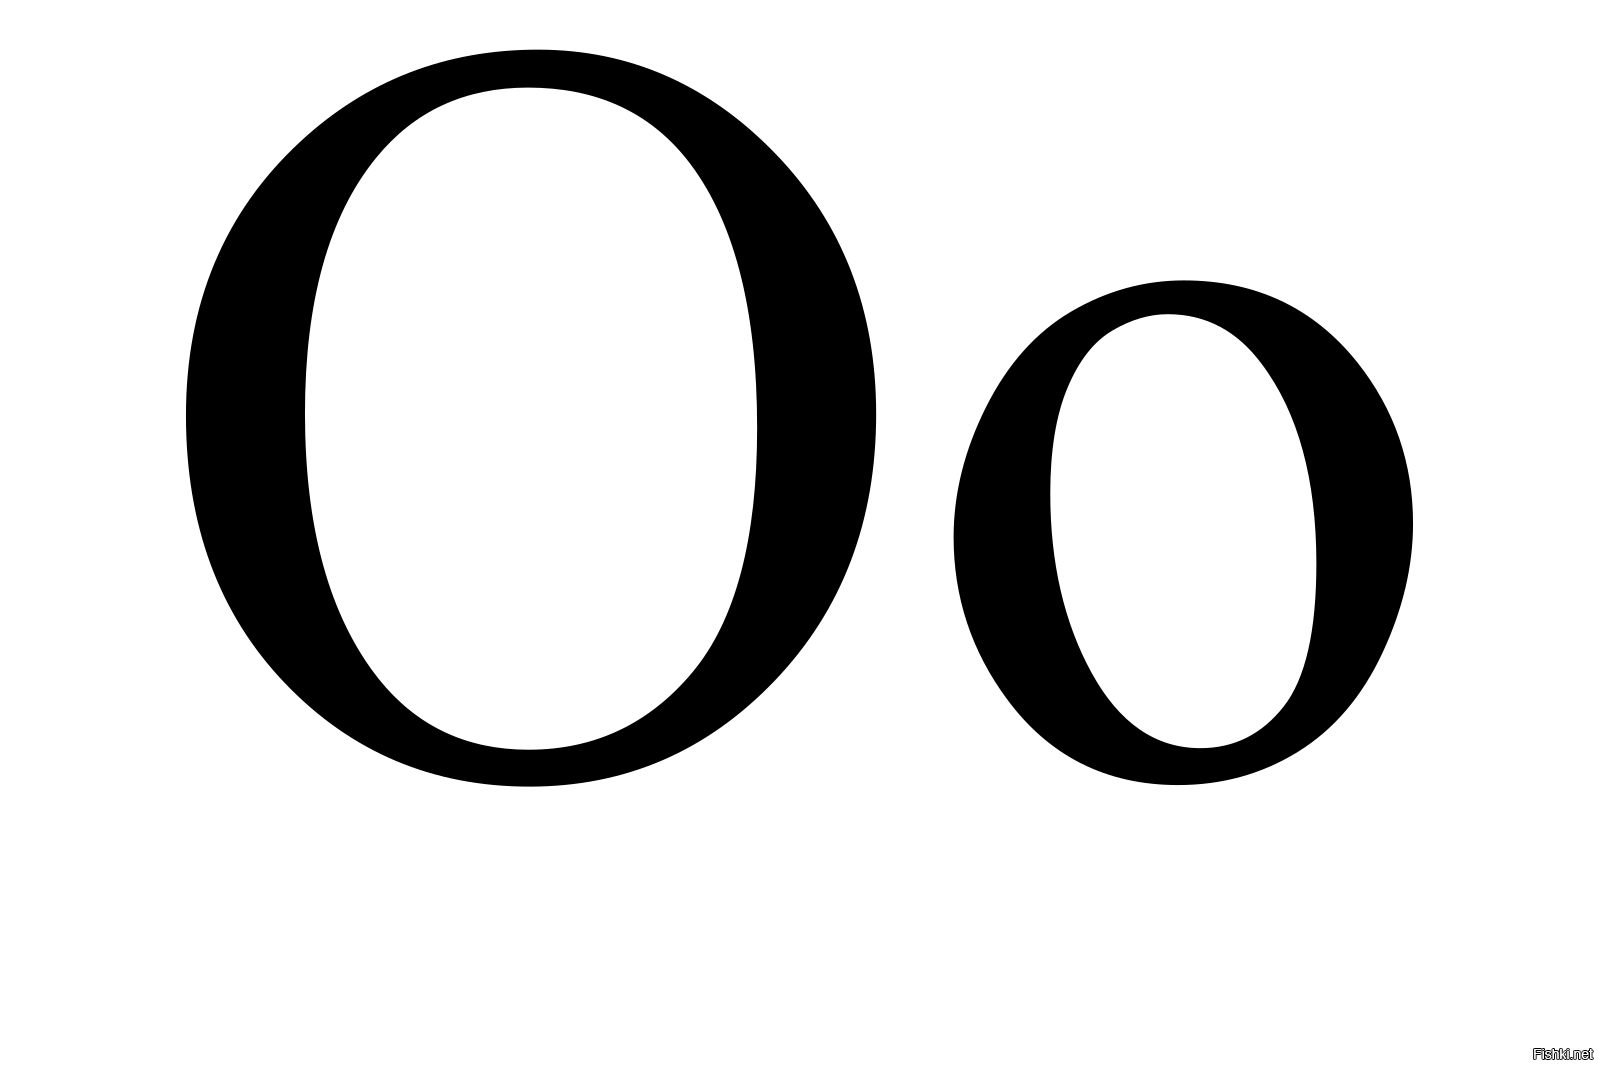 Хайпожор. Омикрон это буква греческого алфавита и не является уникальным названием.  Разные сферы деятельности могут иметь одинаковые не уникальные названия  Так же есть звезда Омикрон персея.